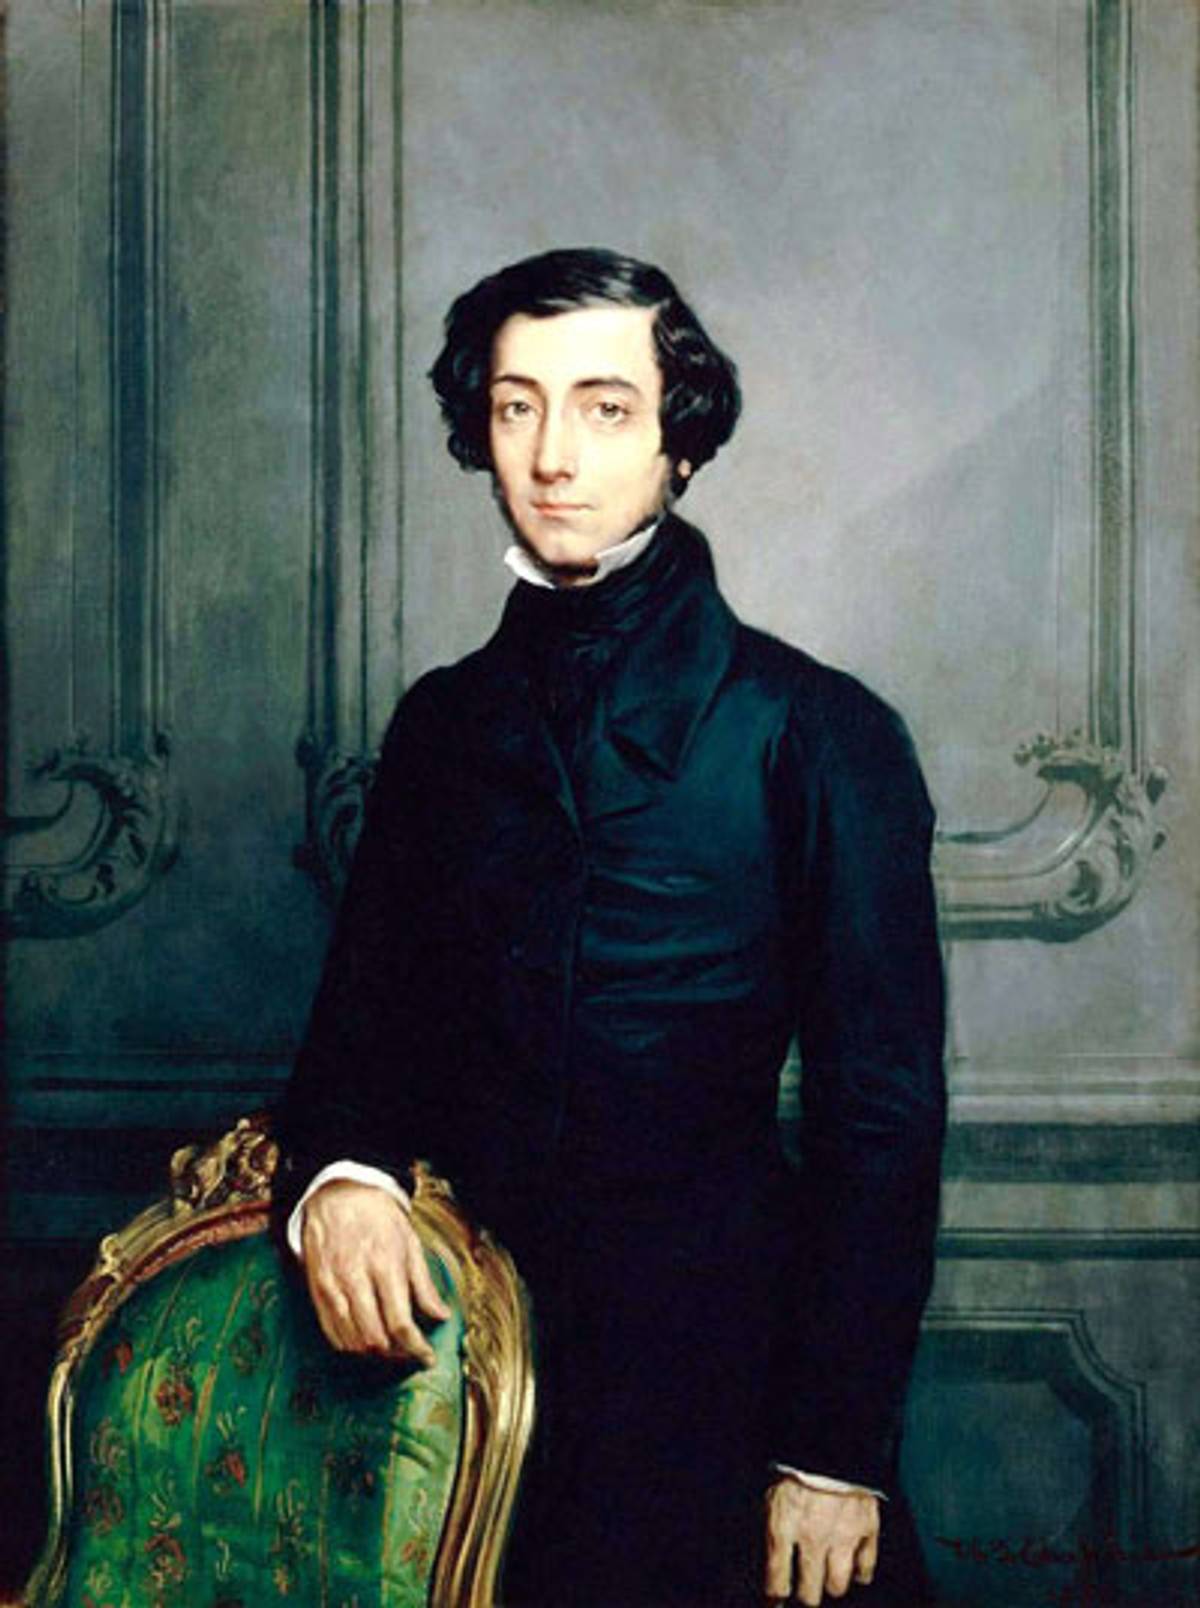 Théodore Chassériau, portrait of Alexis de Tocqueville, 1850 (Photo: Wikipedia)